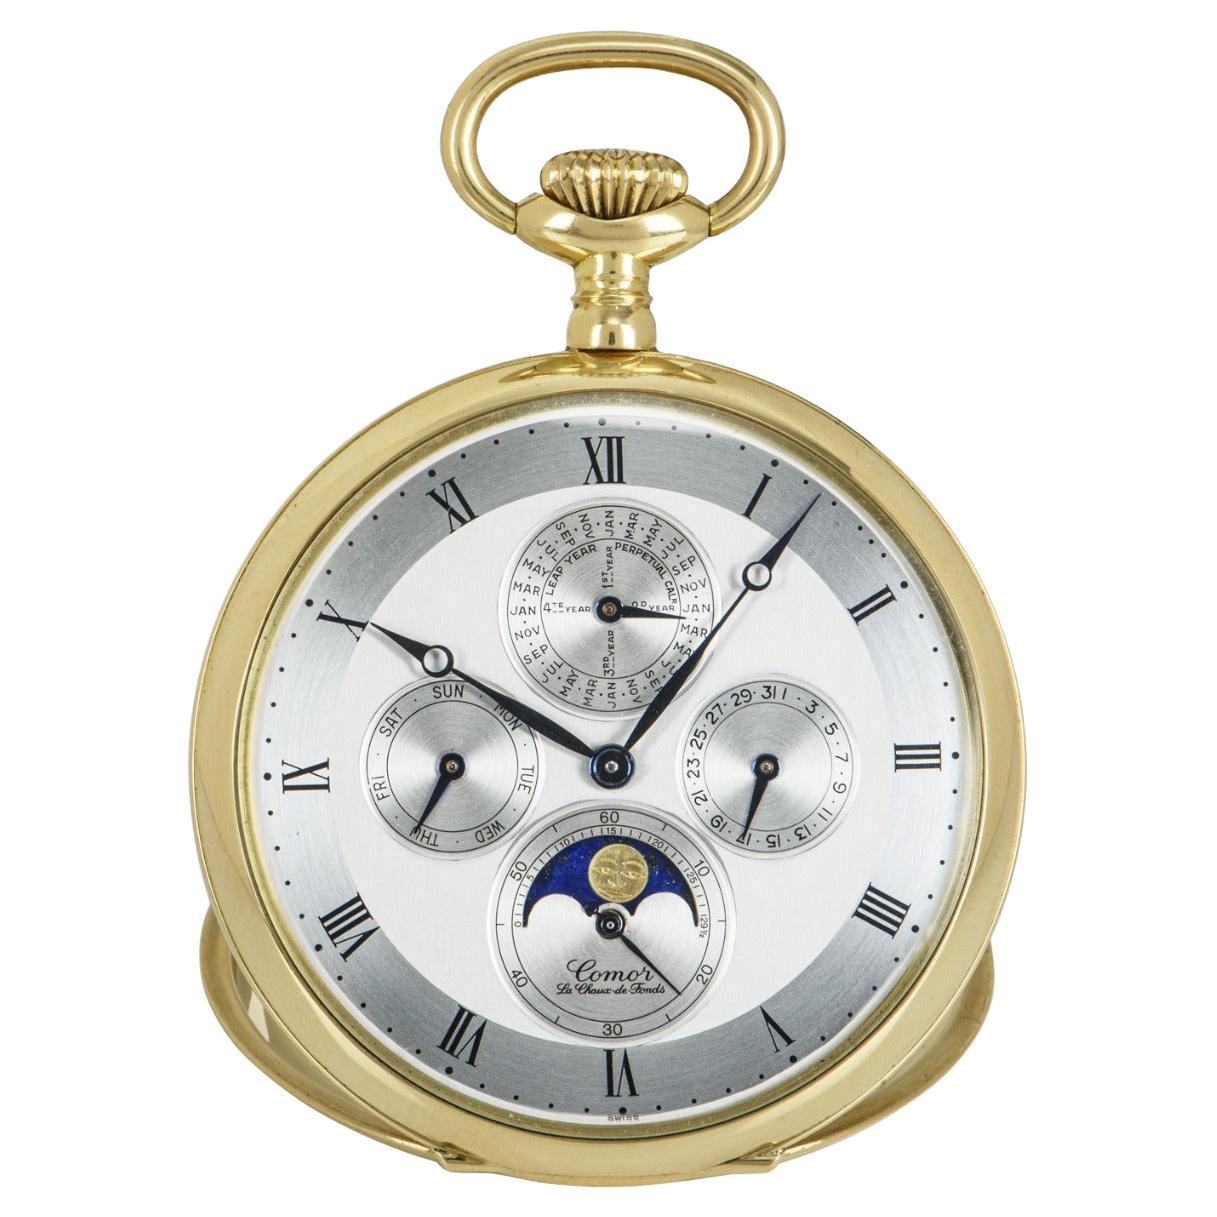 Comor 18kt Yellow Gold Open Face Keyless Lever Perpetual Calendar Pocket Watch 